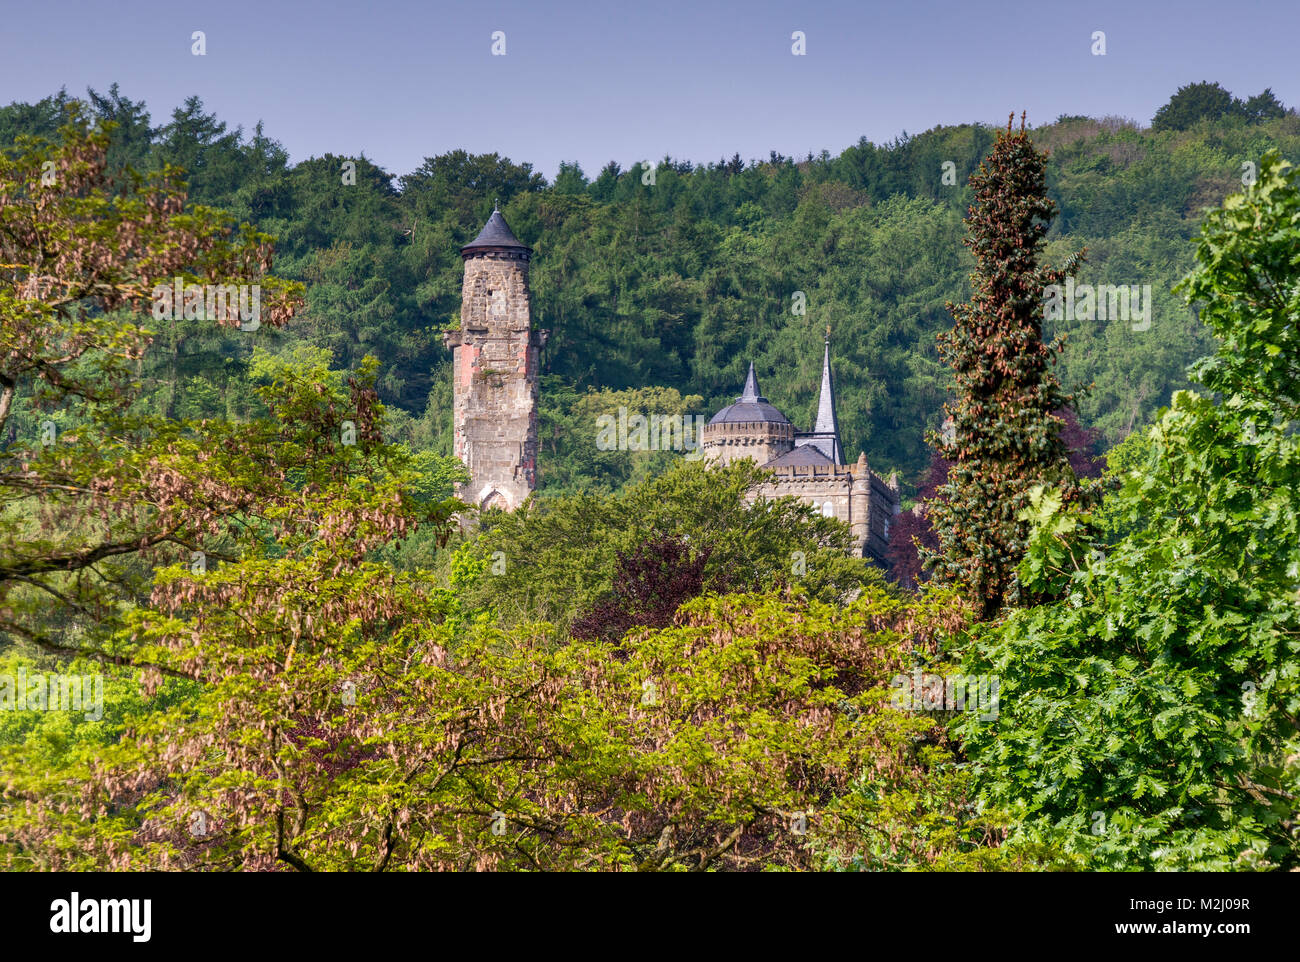 Lowenburg, réplique de château médiéval, le parc Bergpark à Wilhelmshohe à Kassel, Hessen, Allemagne Banque D'Images